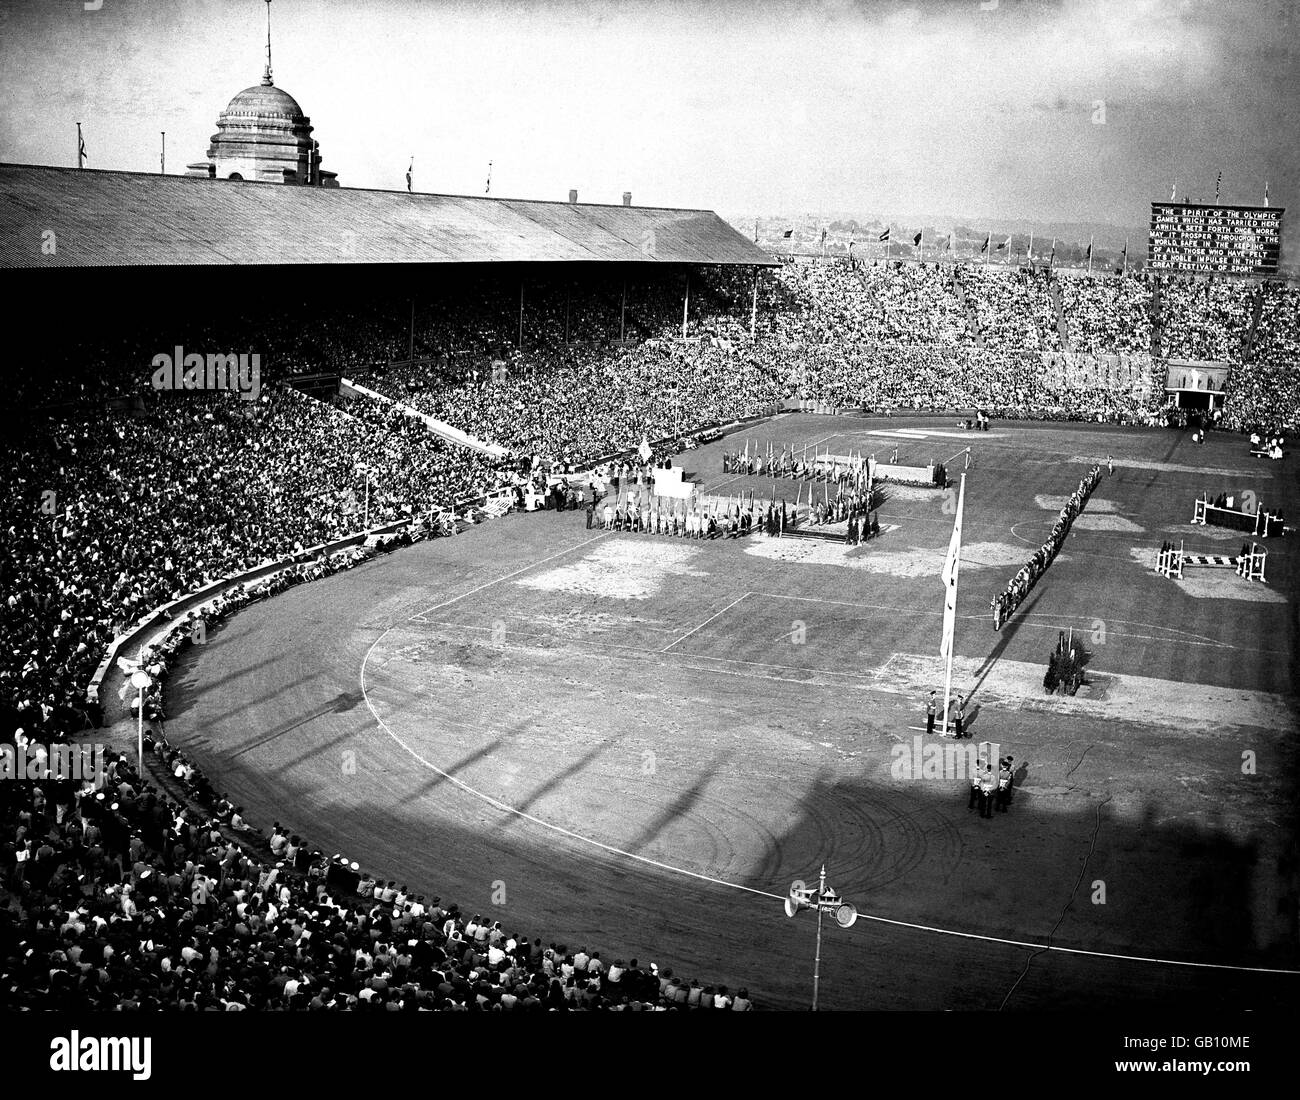 Giochi Olimpici di Londra 1948 - cerimonia di chiusura - Wembley. La consegna della bandiera olimpica al sindaco di Londra durante la cerimonia di chiusura dell'ultimo giorno a Wembley. Foto Stock